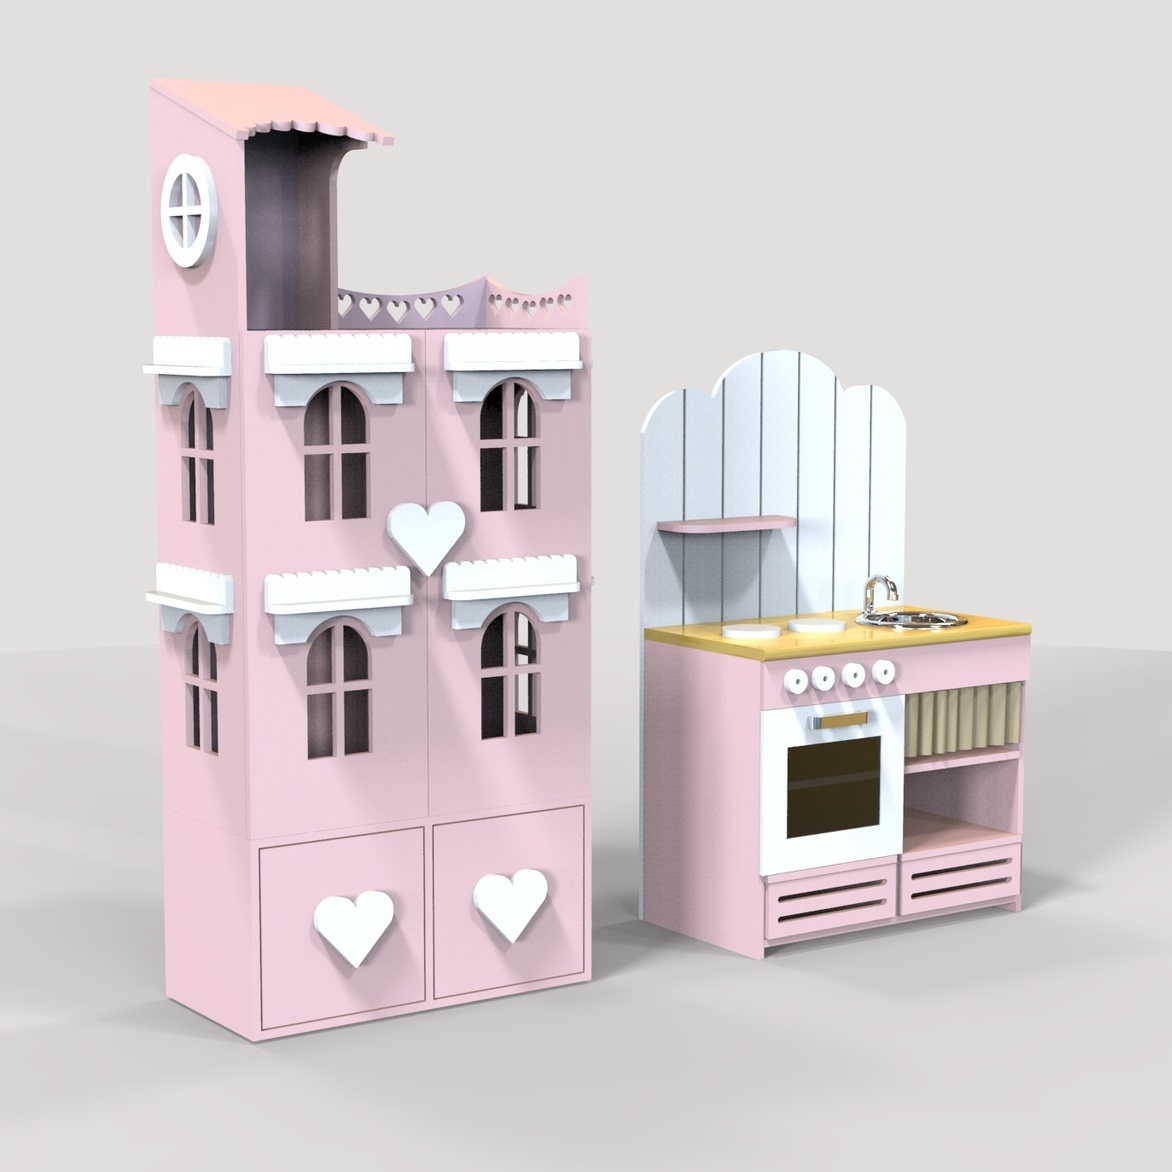 Maison de poupée découpée au laser et cuisine miniature